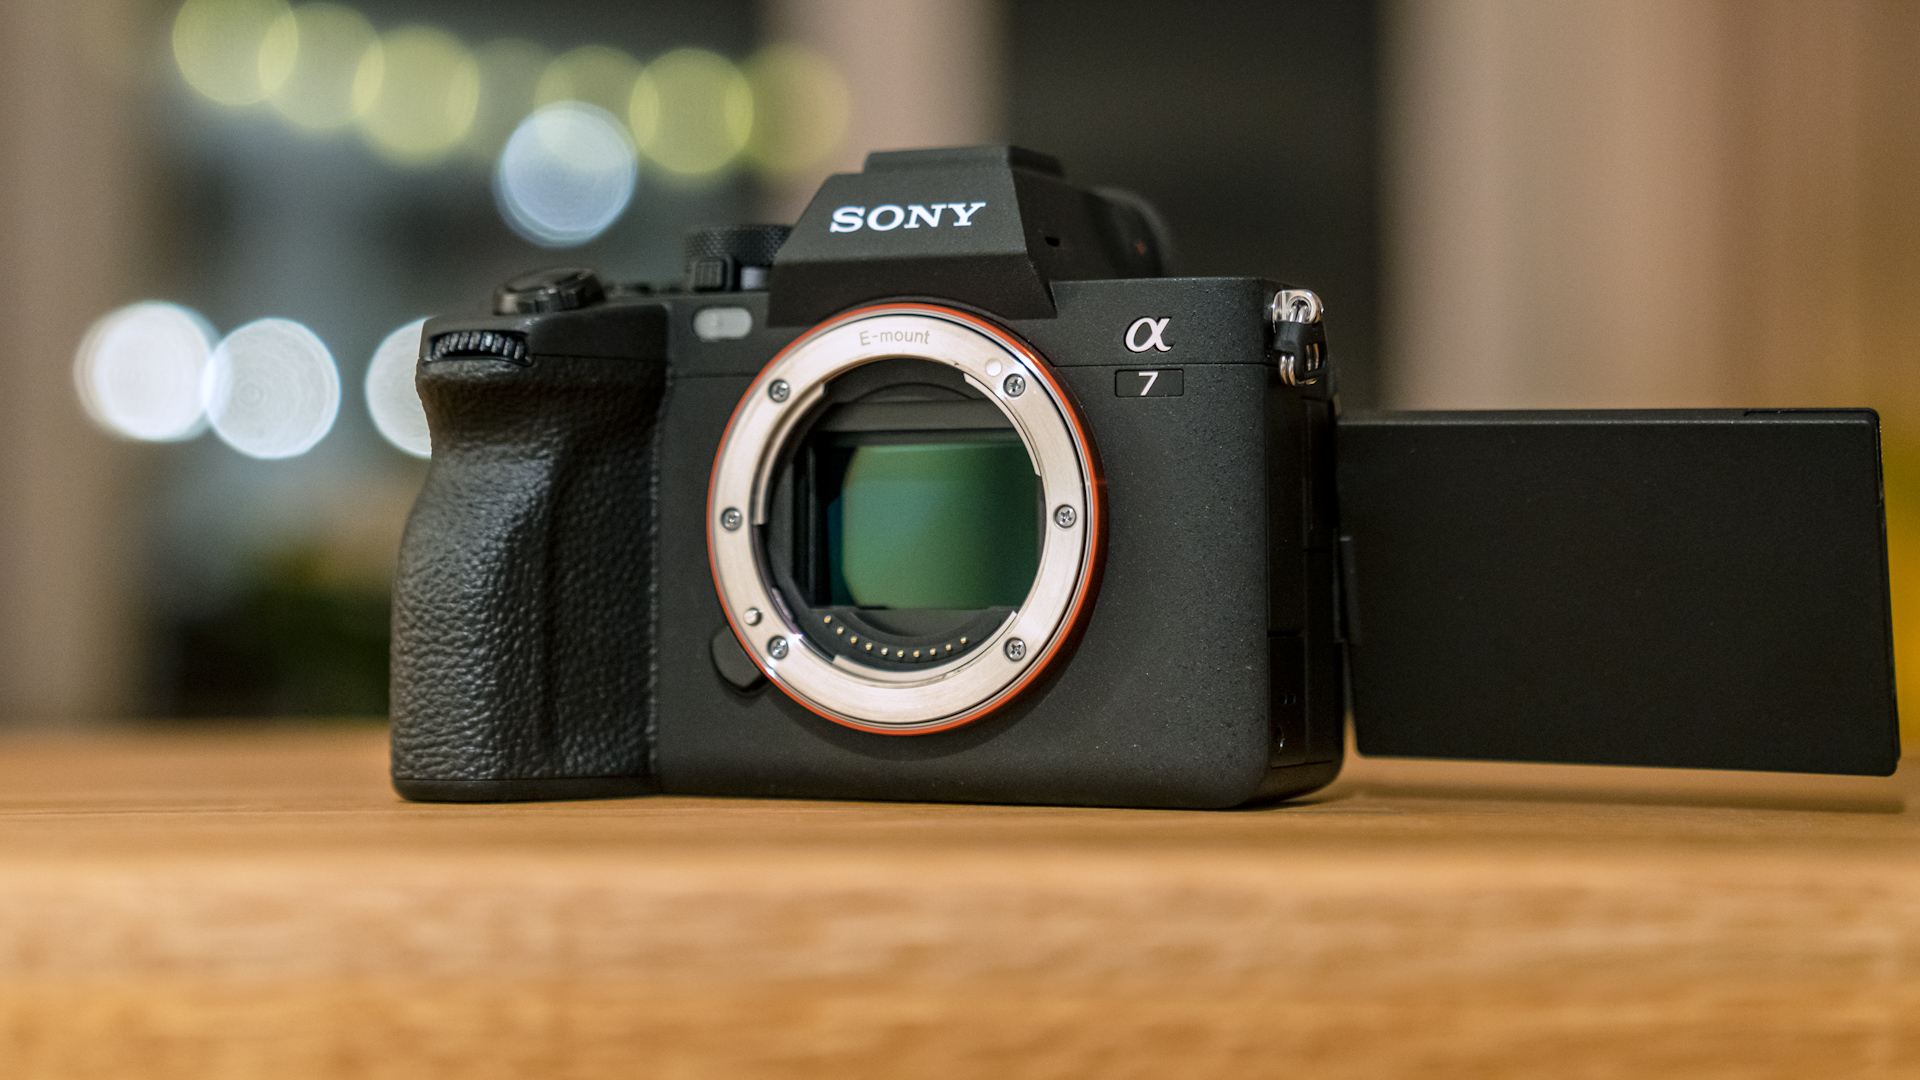 Reseña de la Sony a7 IV - Una cámara mirrorless de nivel de